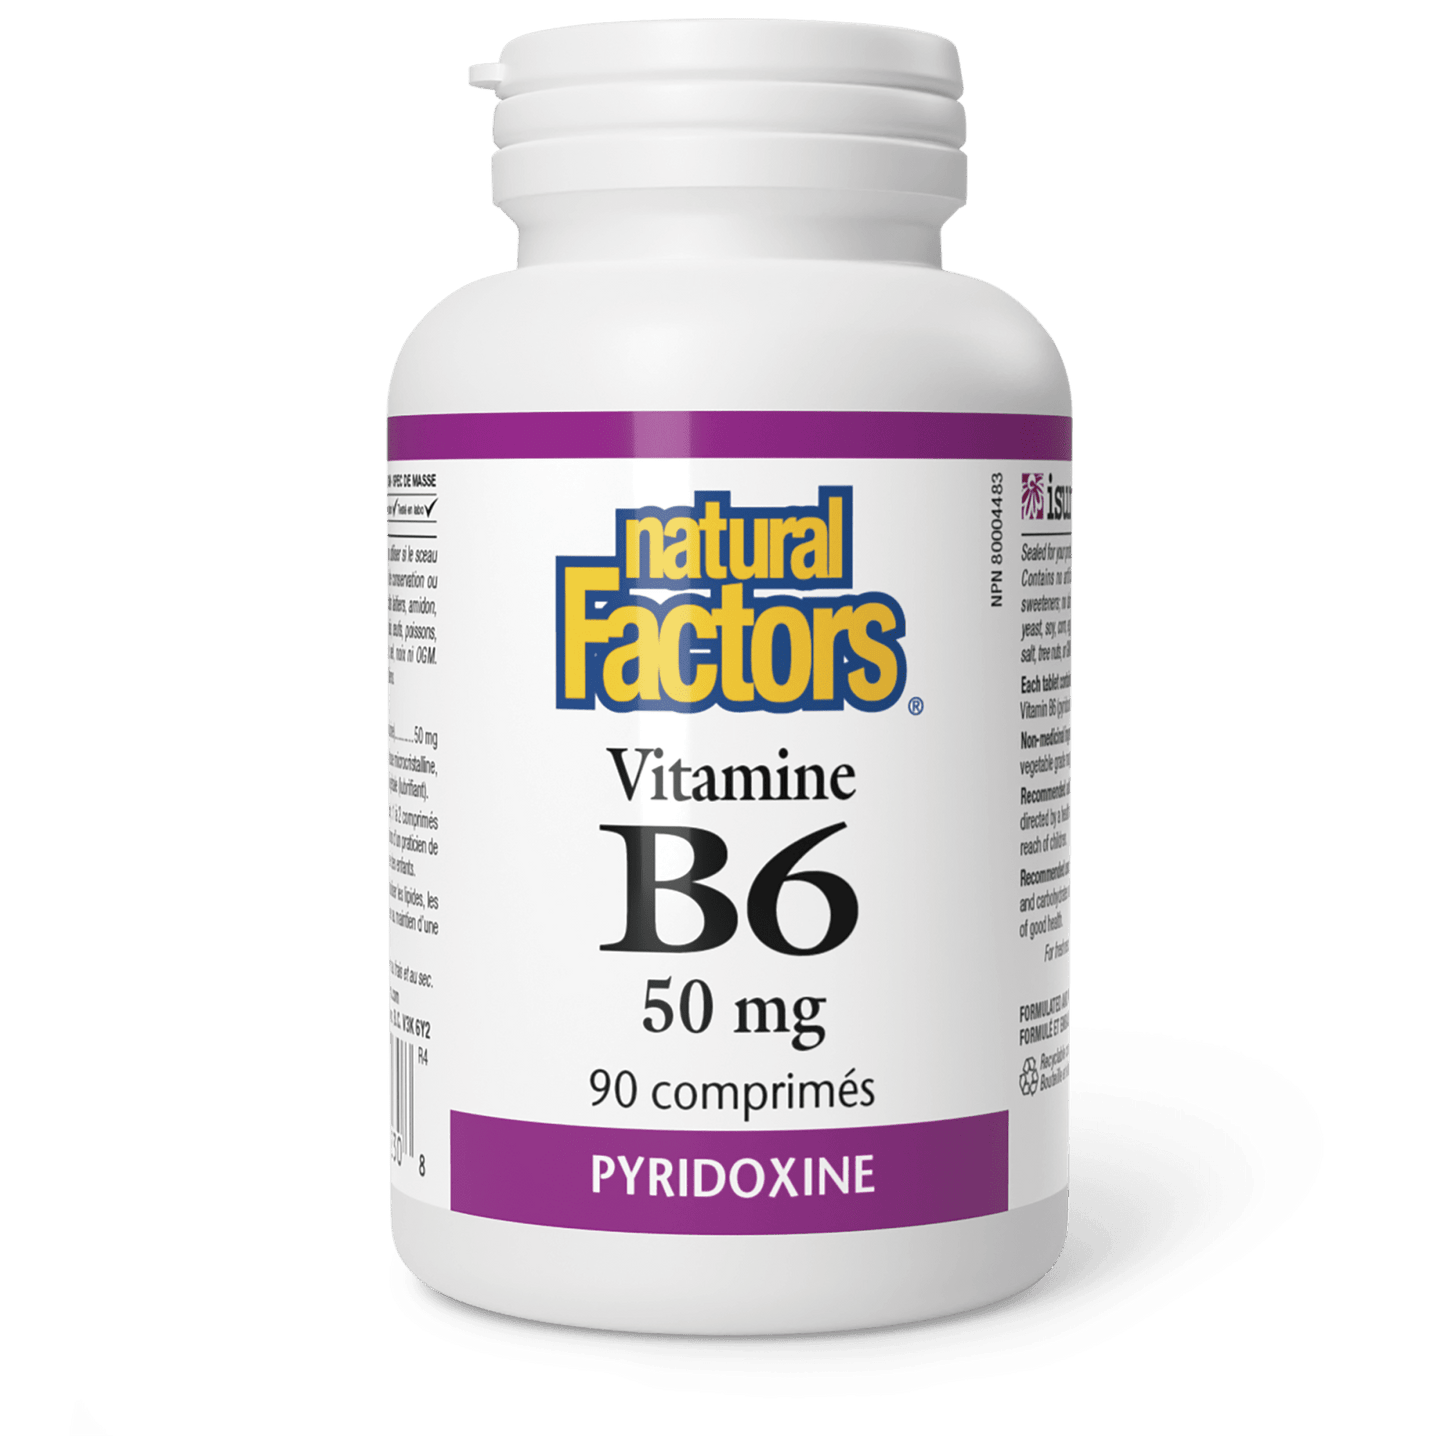 Vitamine B6 50 mg, Natural Factors|v|image|1230